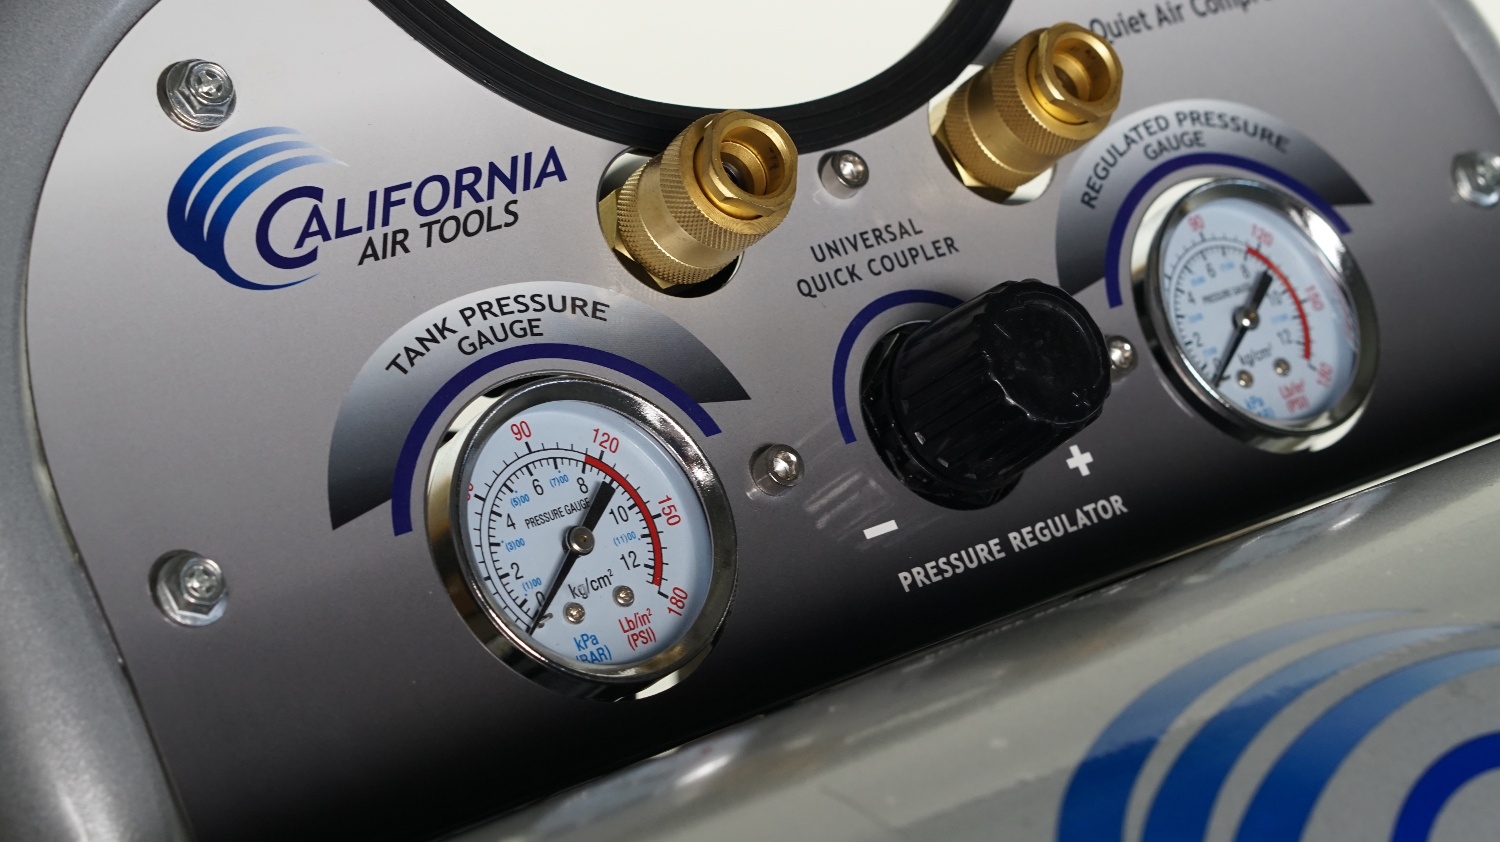 фото Компрессор бесшумный CAT 4620AC California air tools (сша)